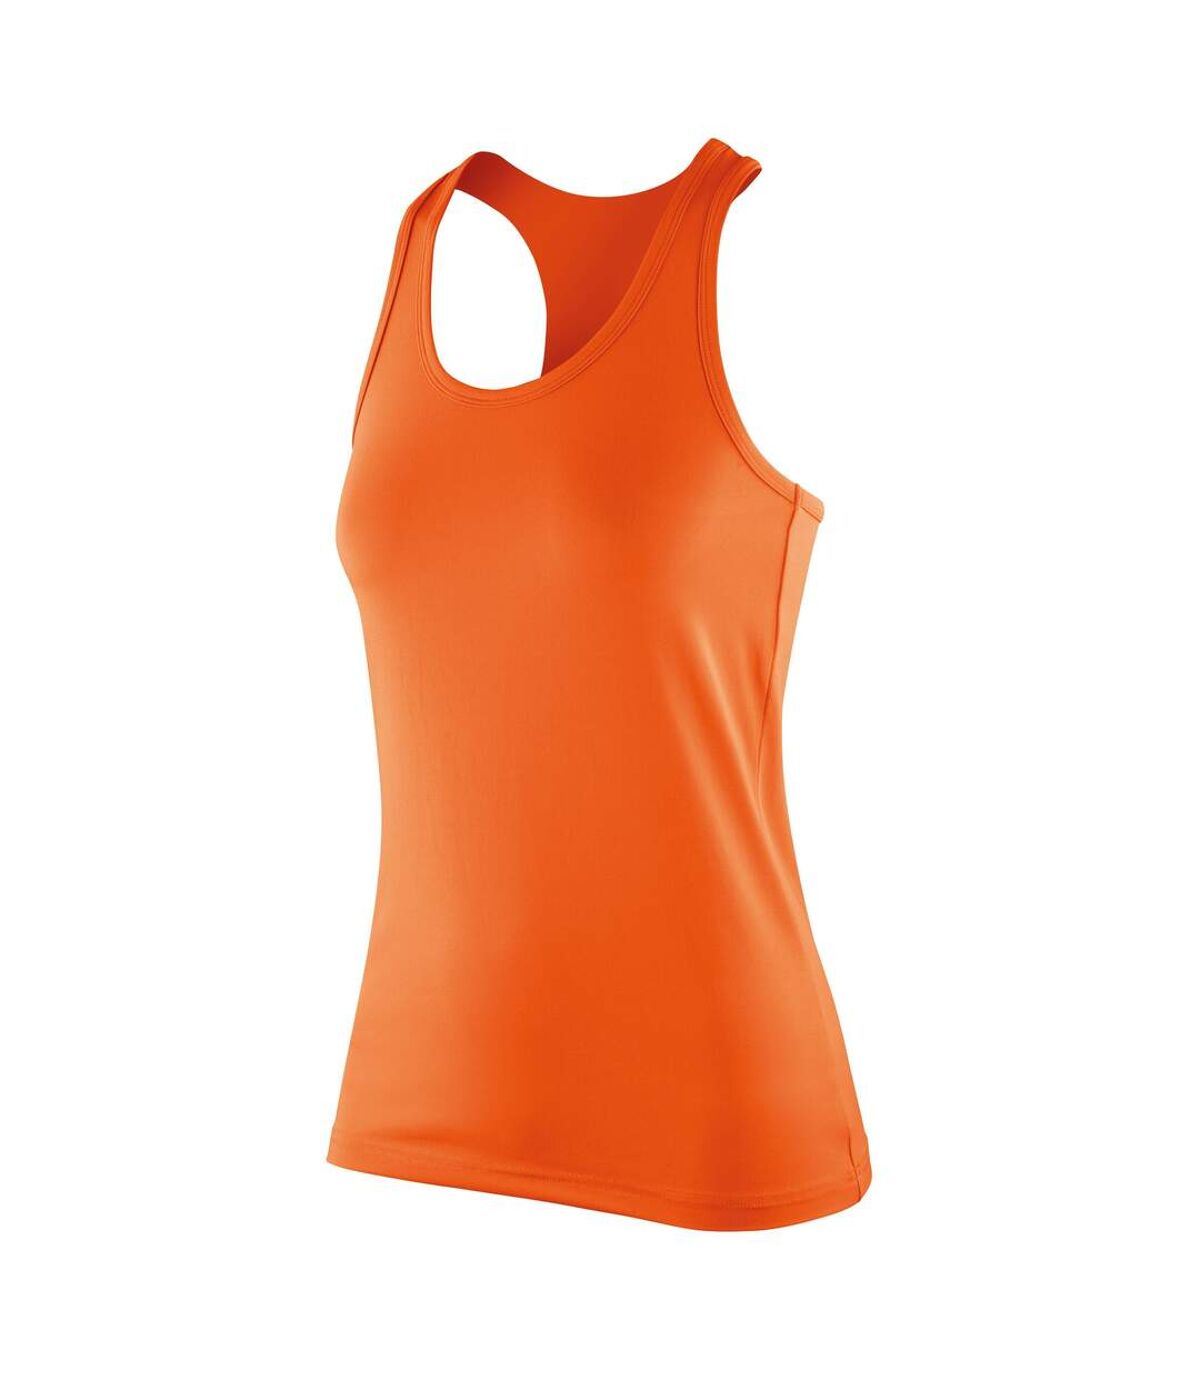 Spiro - Haut Fitness - Femmes (Orange) - UTRW5170